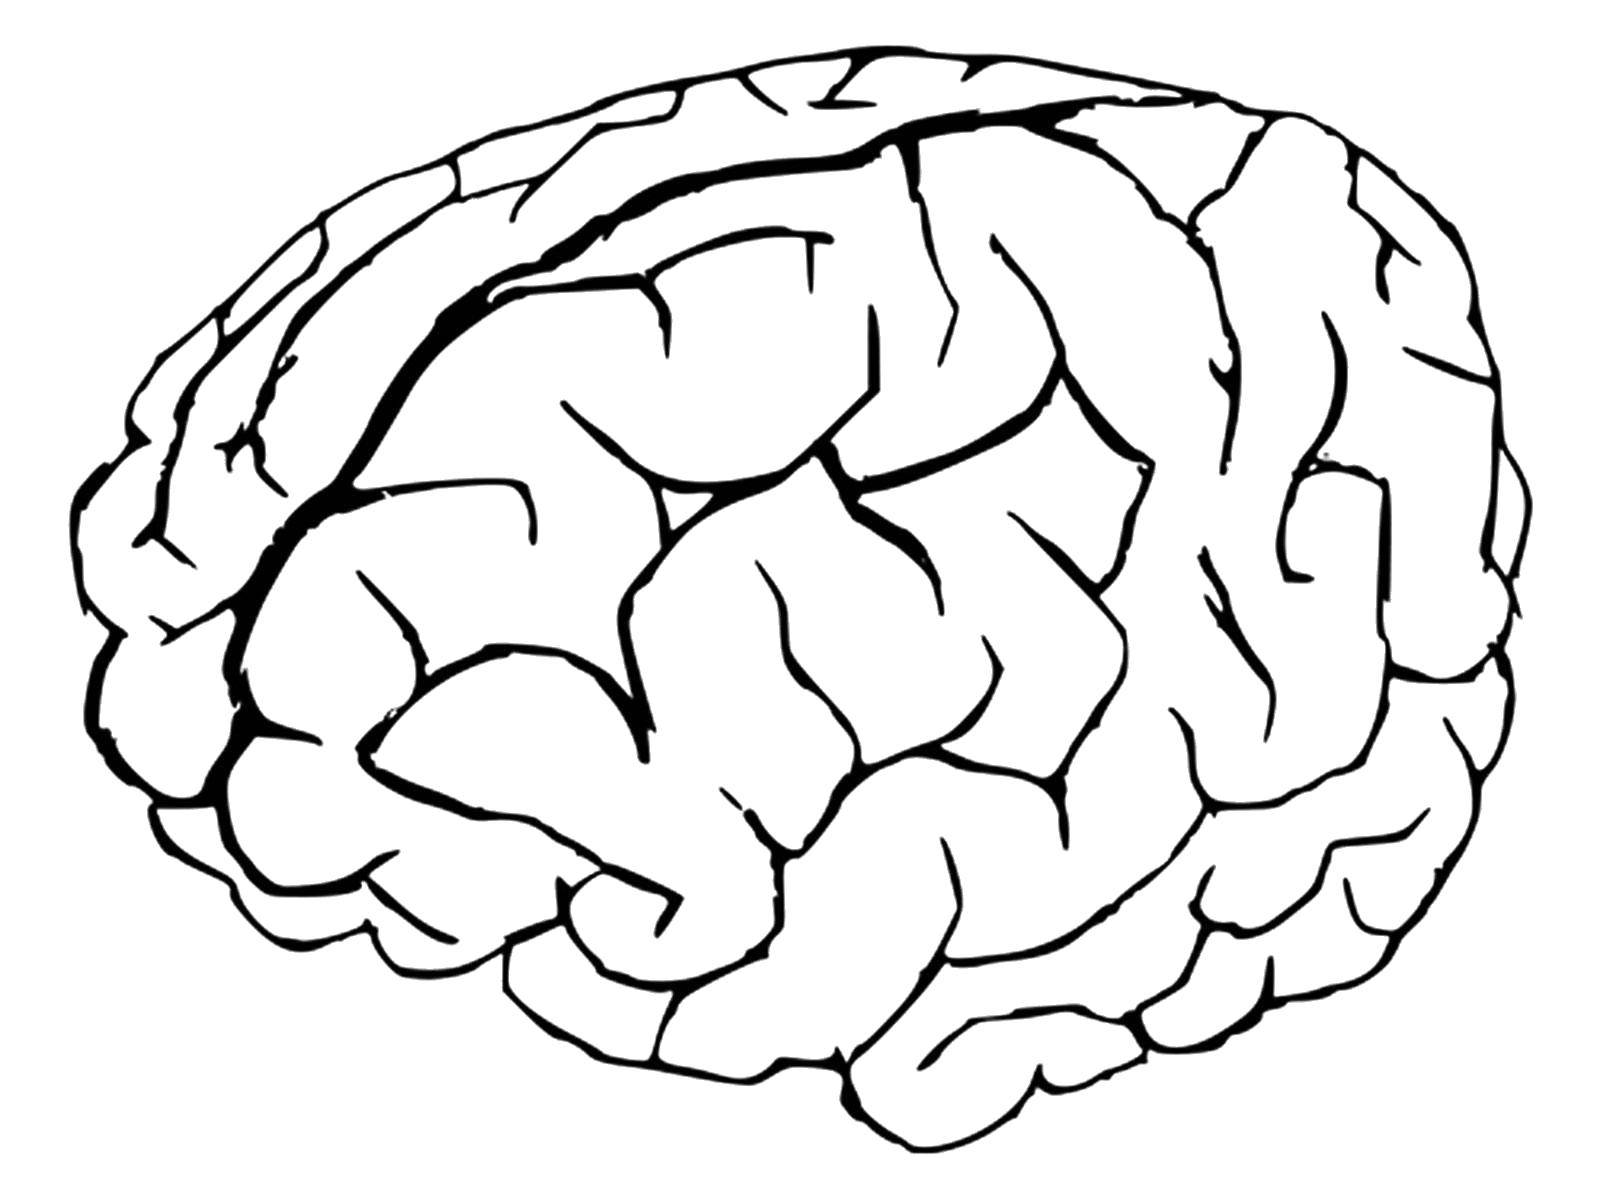 Название: Раскраска Головной мозг. Категория: Строение тела. Теги: Орган, мозг.